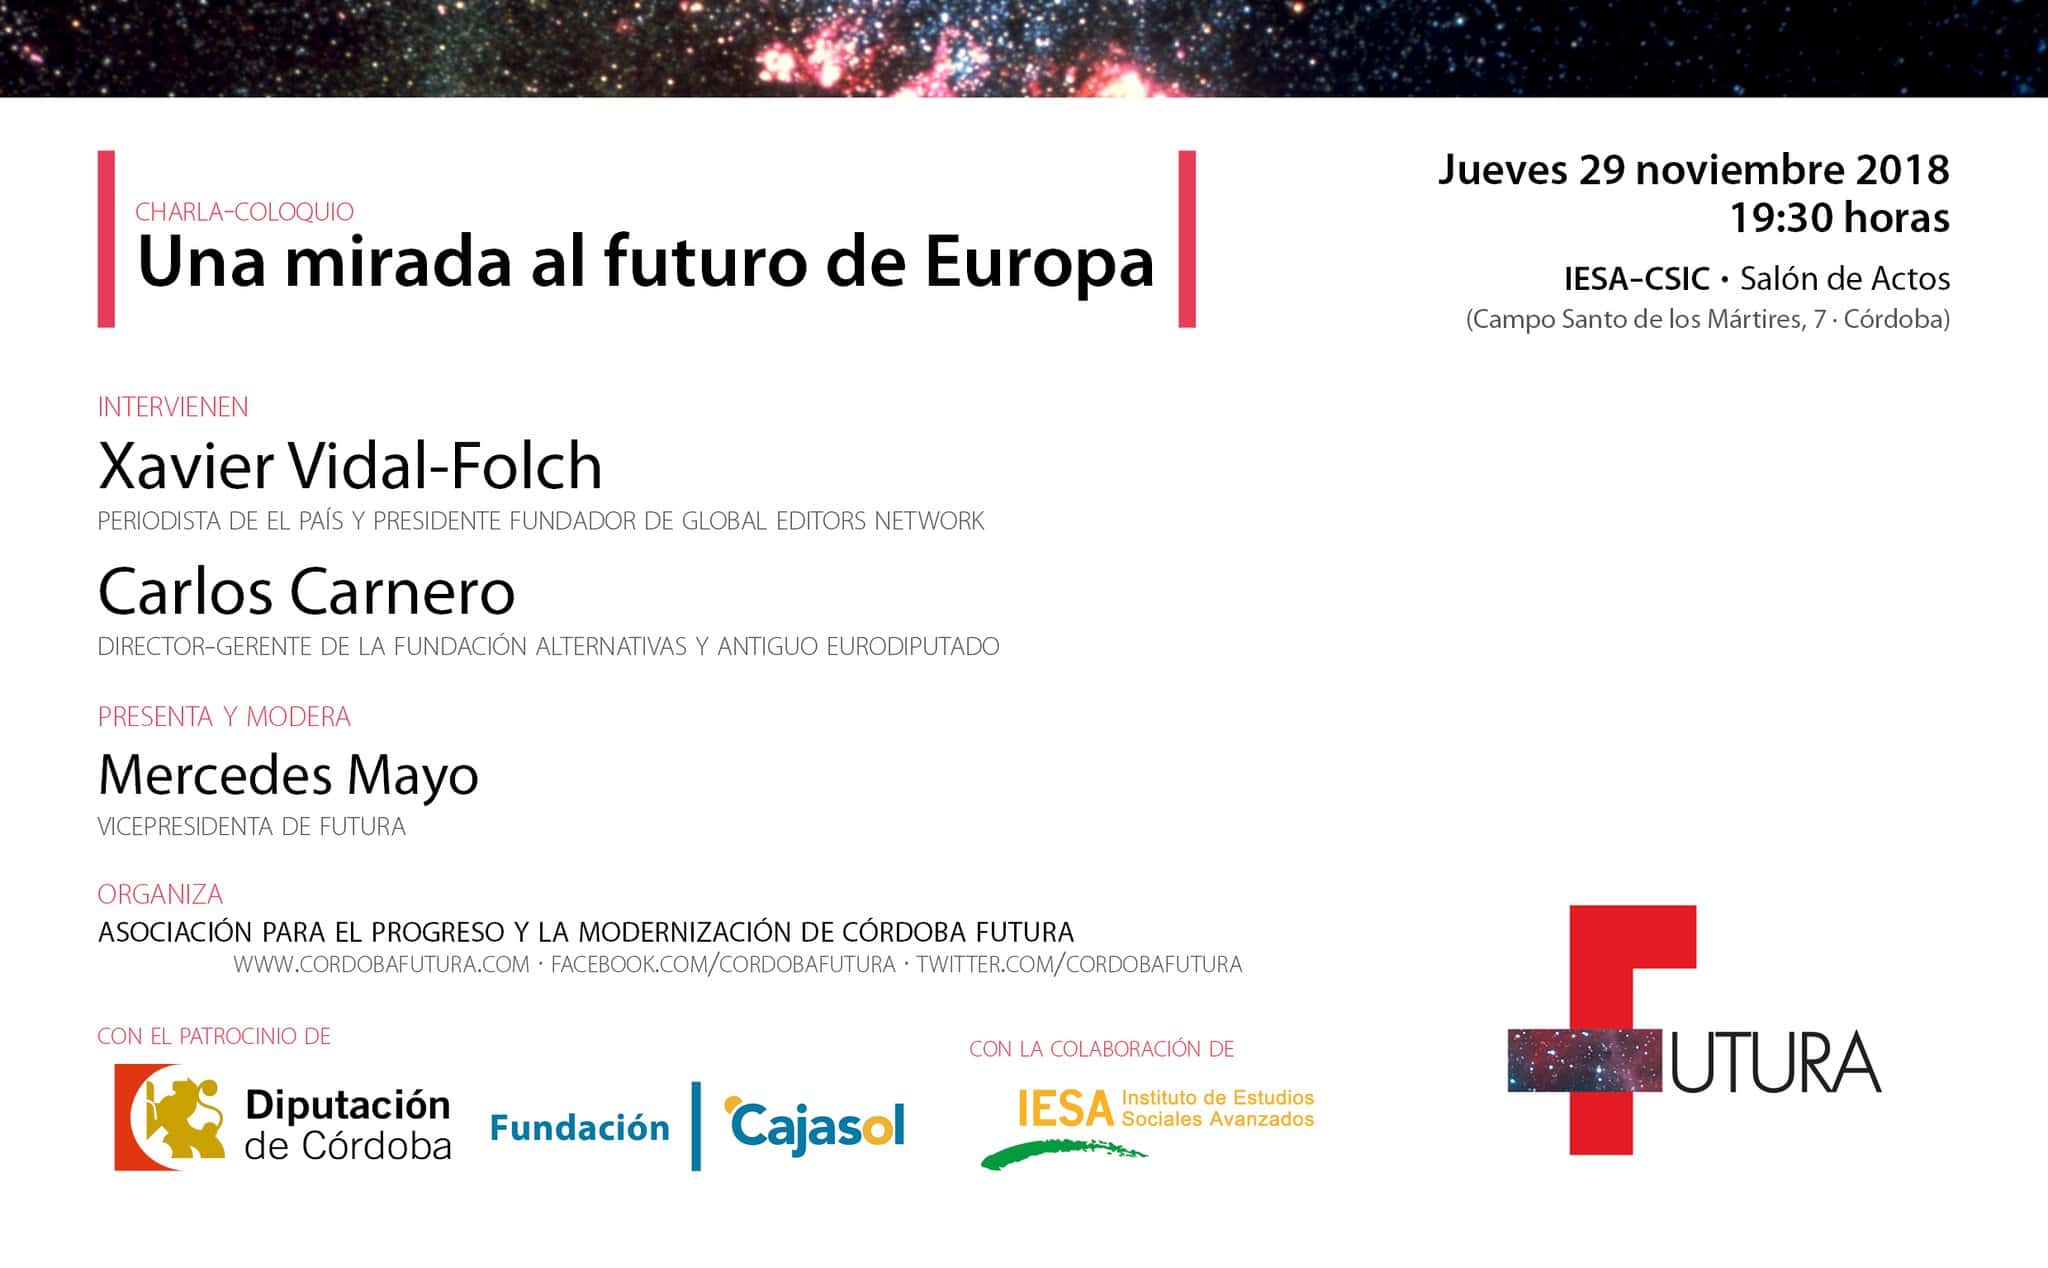 Charla-coloquio Córdoba Futura 'Una mirada al futuro de Europa'